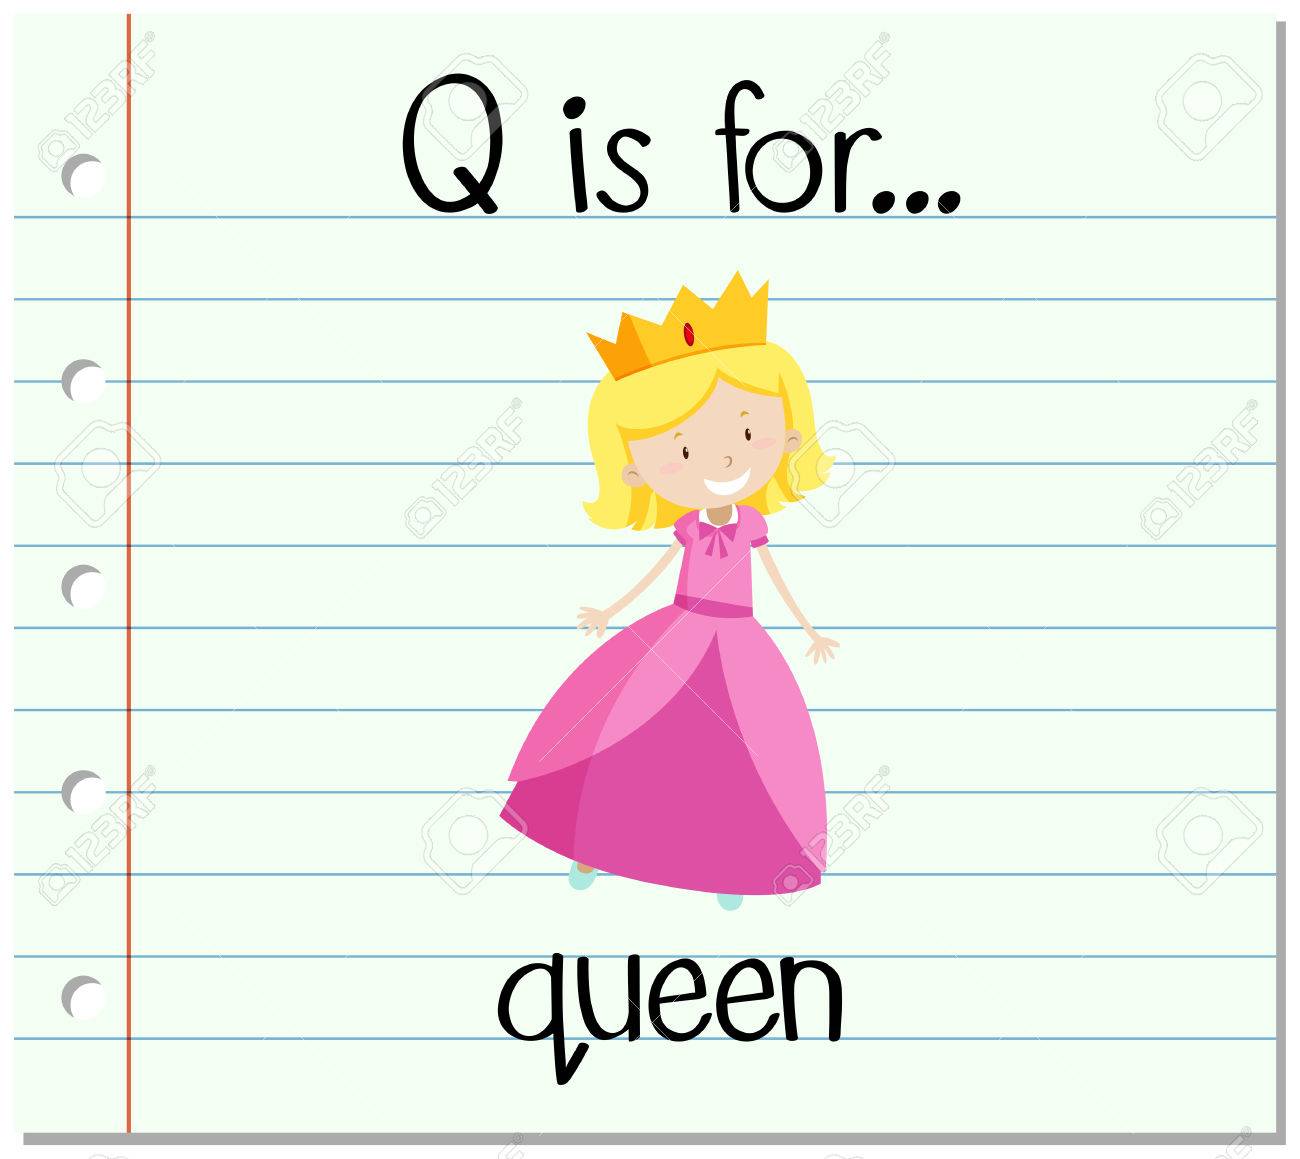 q is queen.jpg